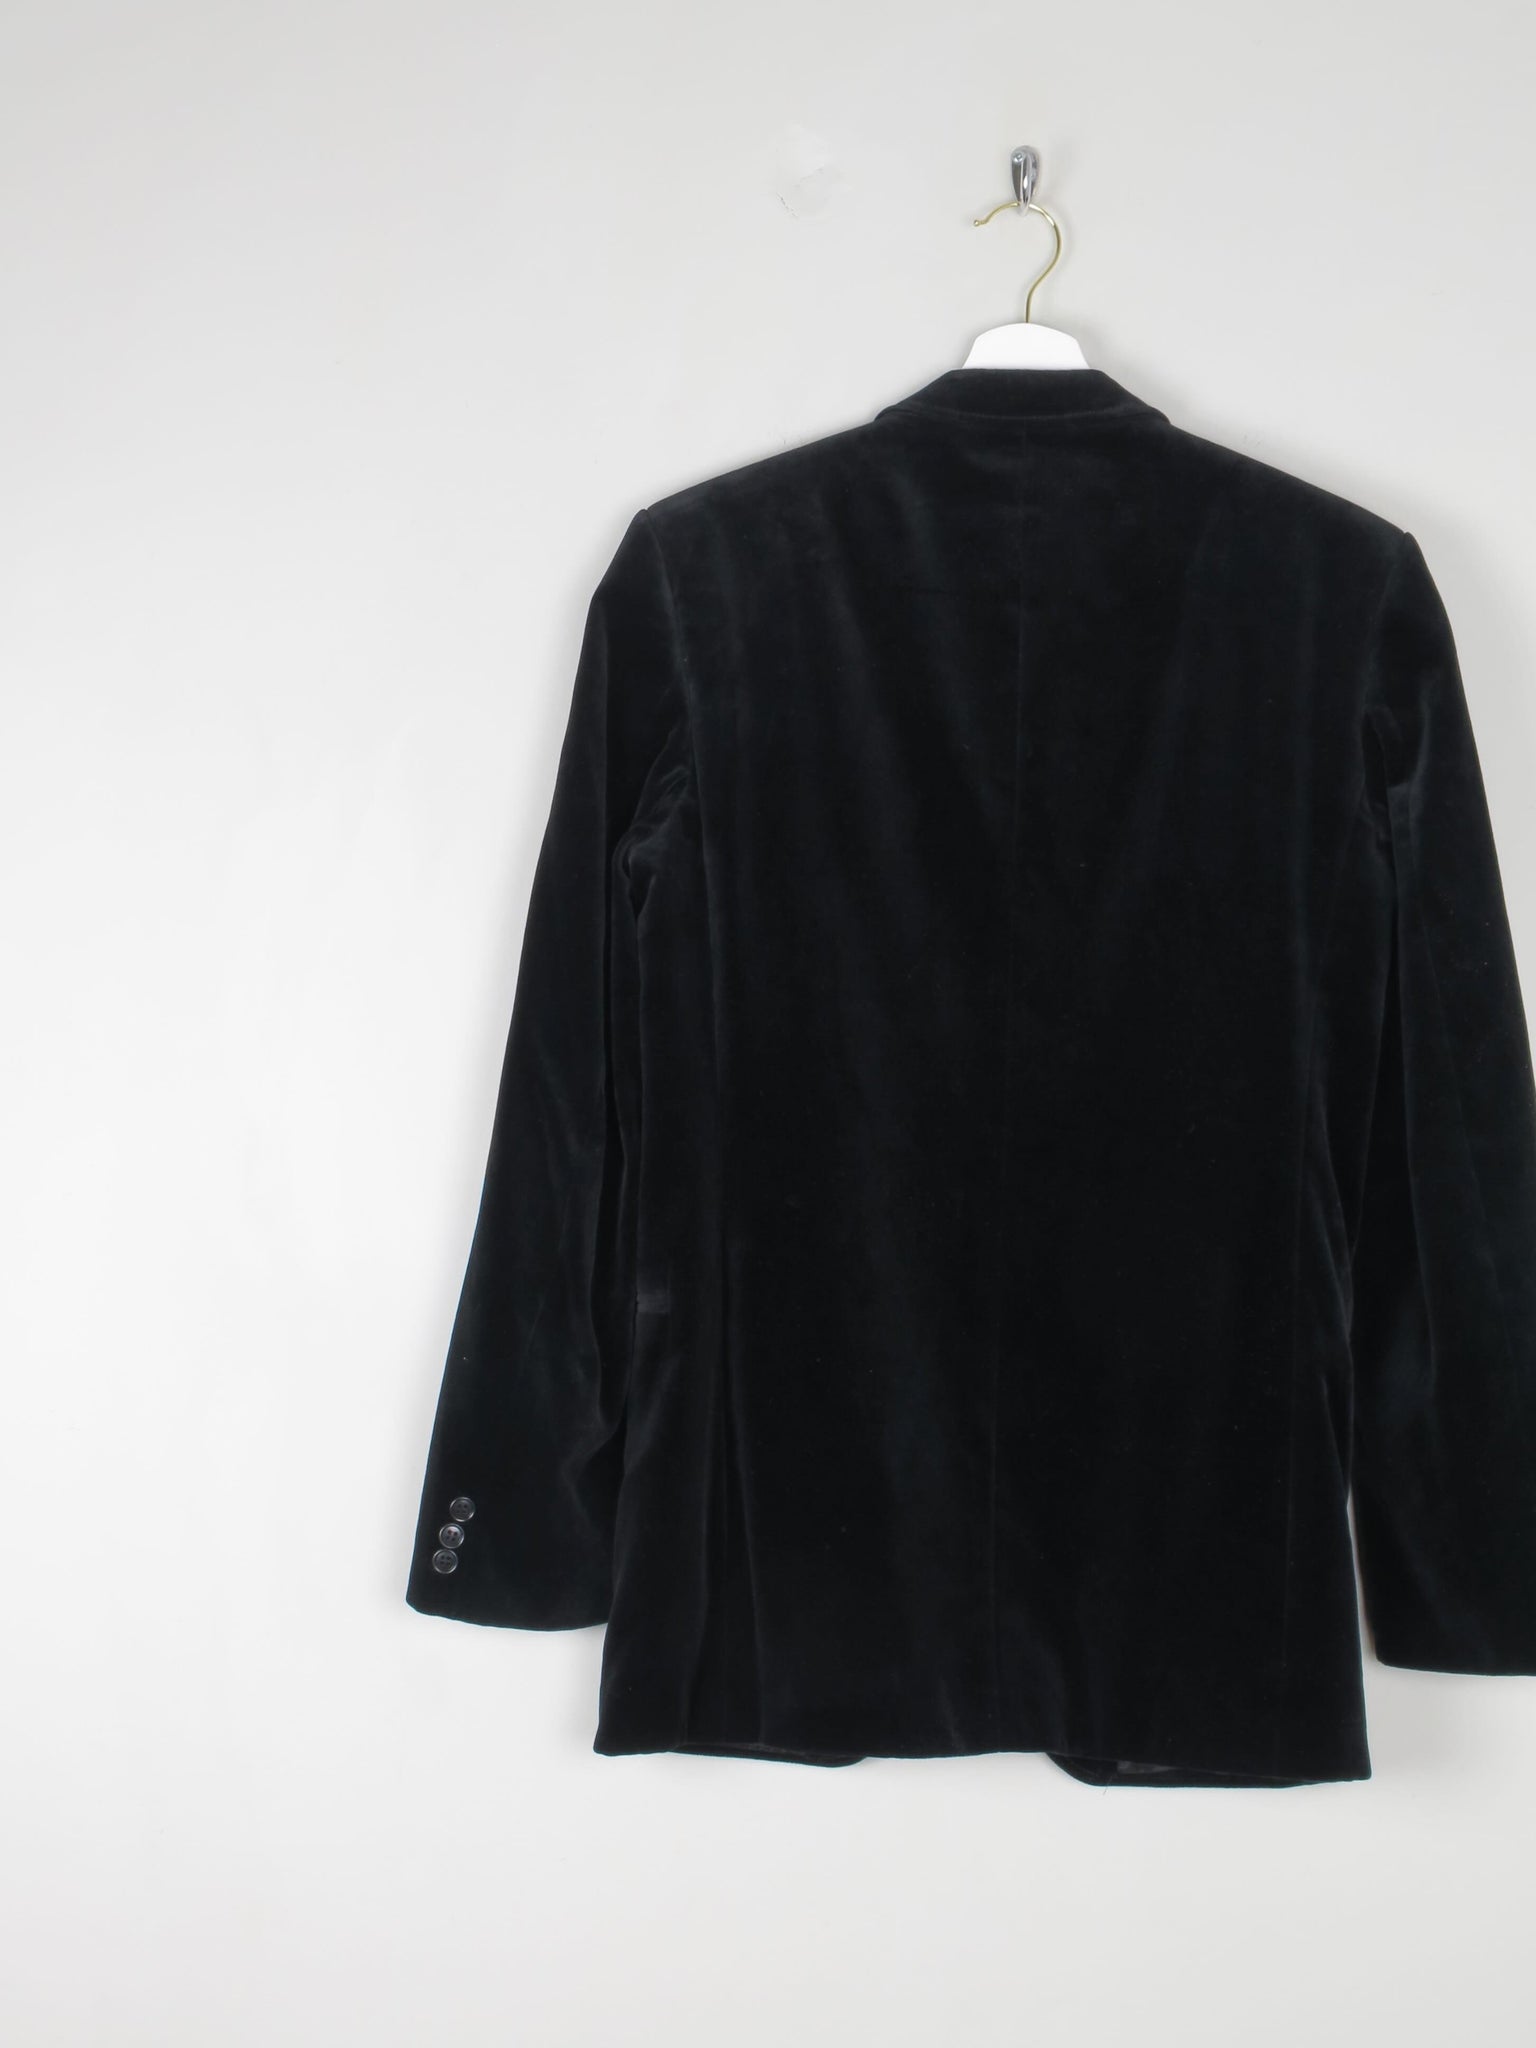 Men's Black Velvet Jacket XS/36" Chest - The Harlequin